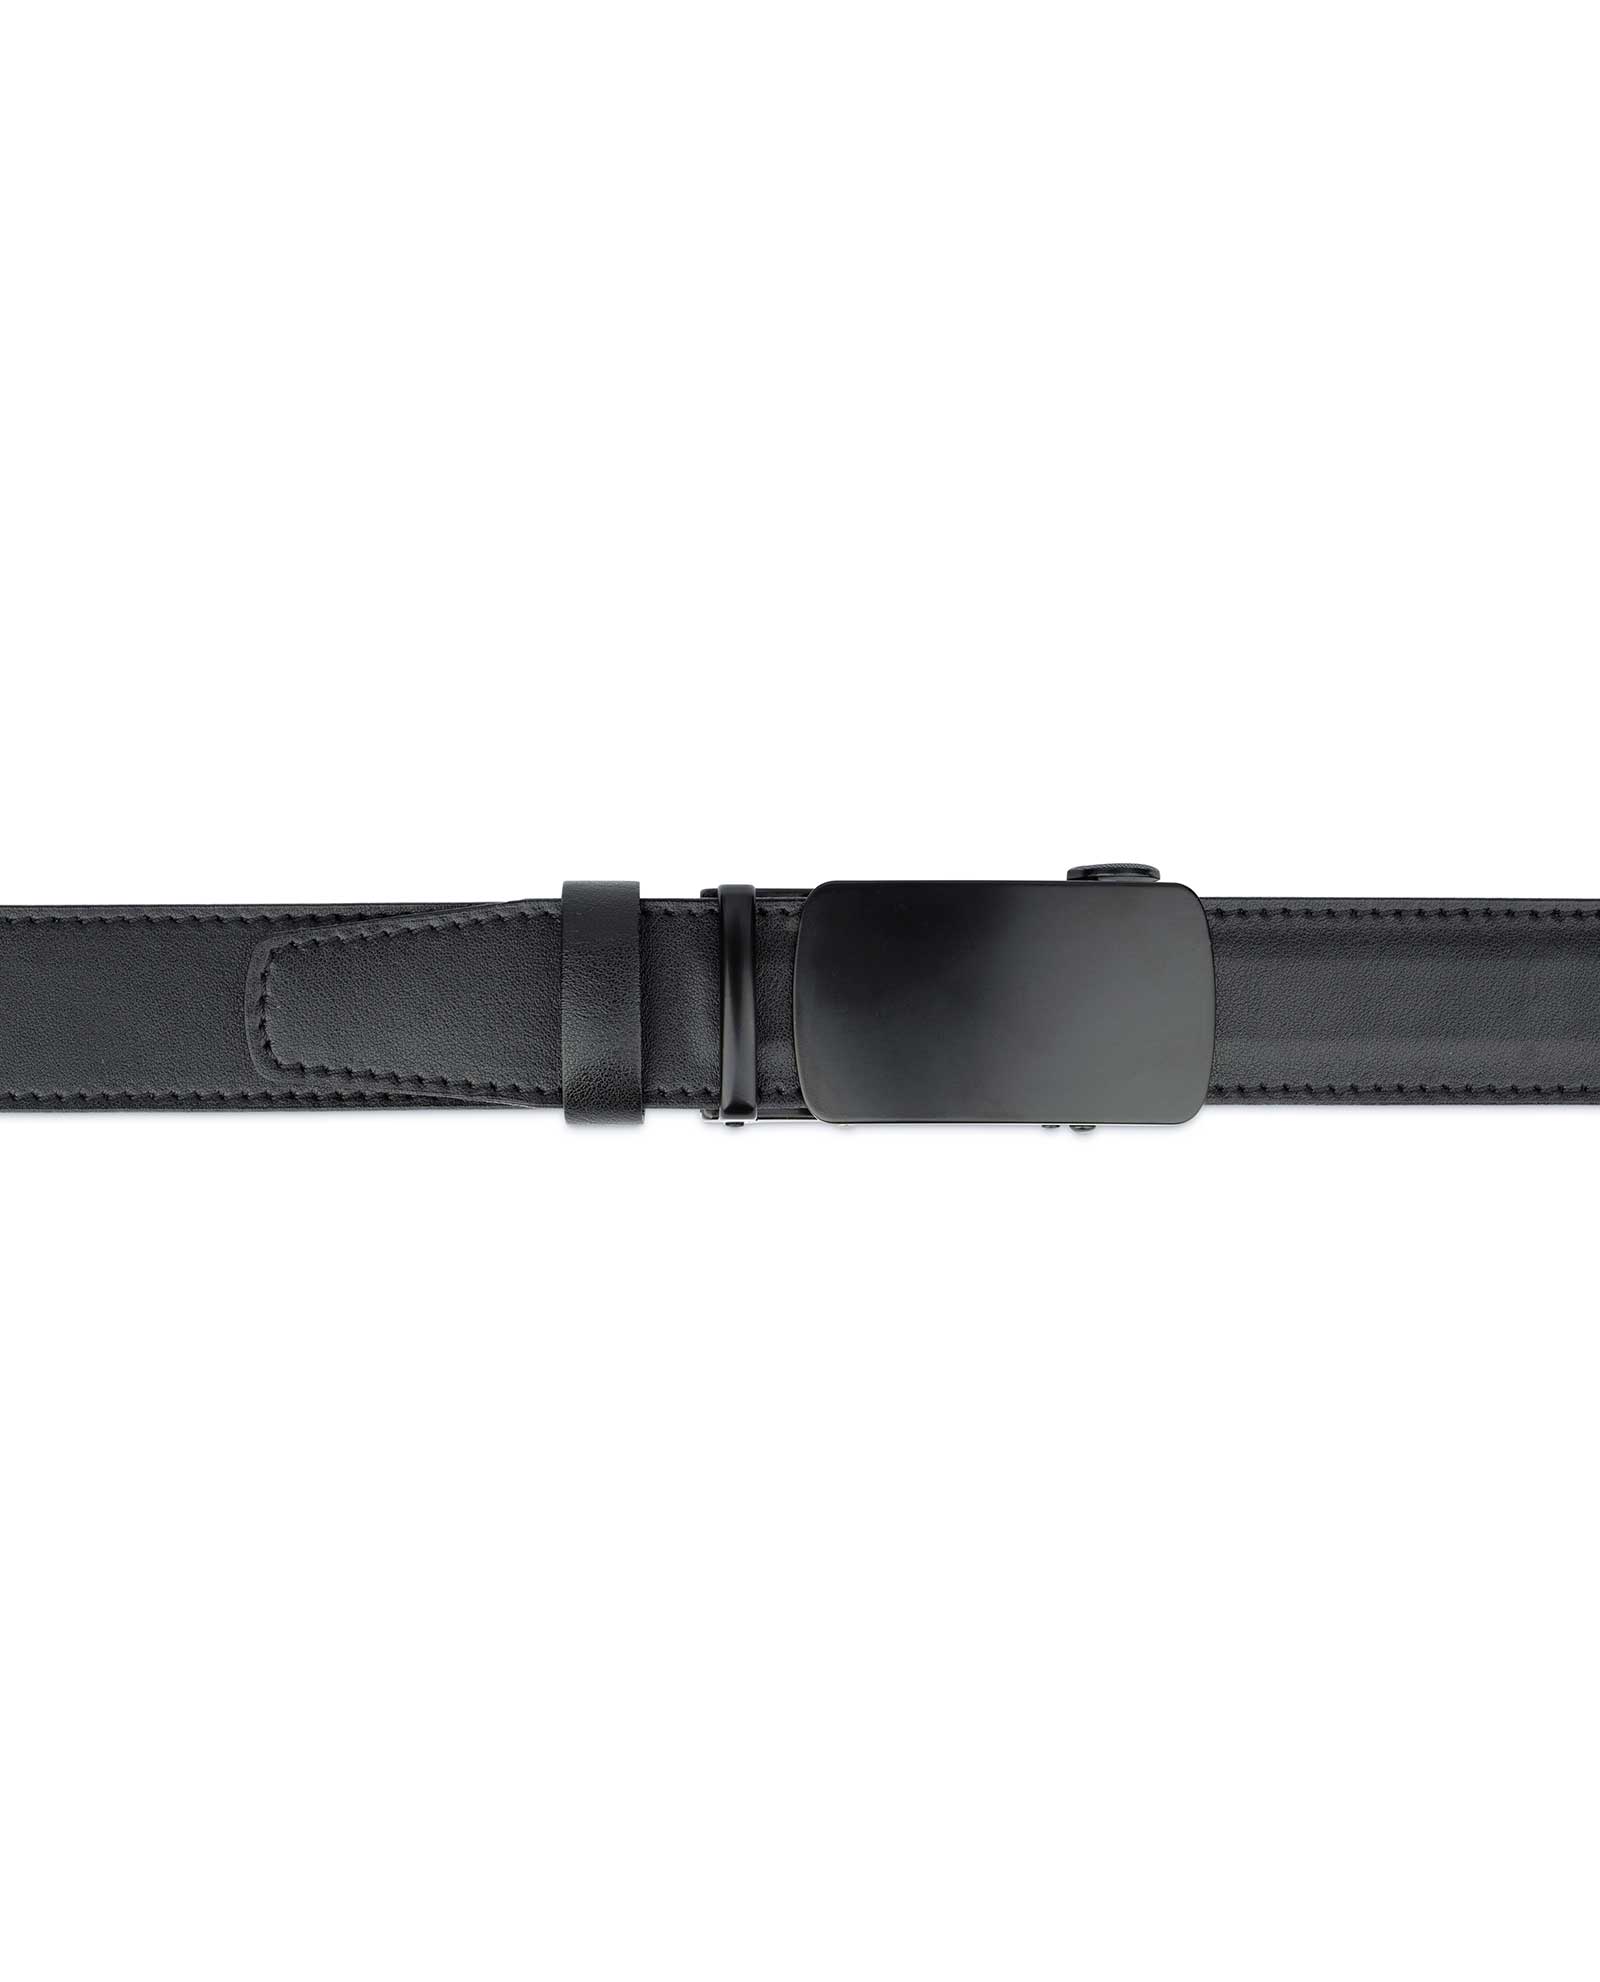 Buy Mens Slide Belt With Black Buckle | LeatherBeltsOnline.com